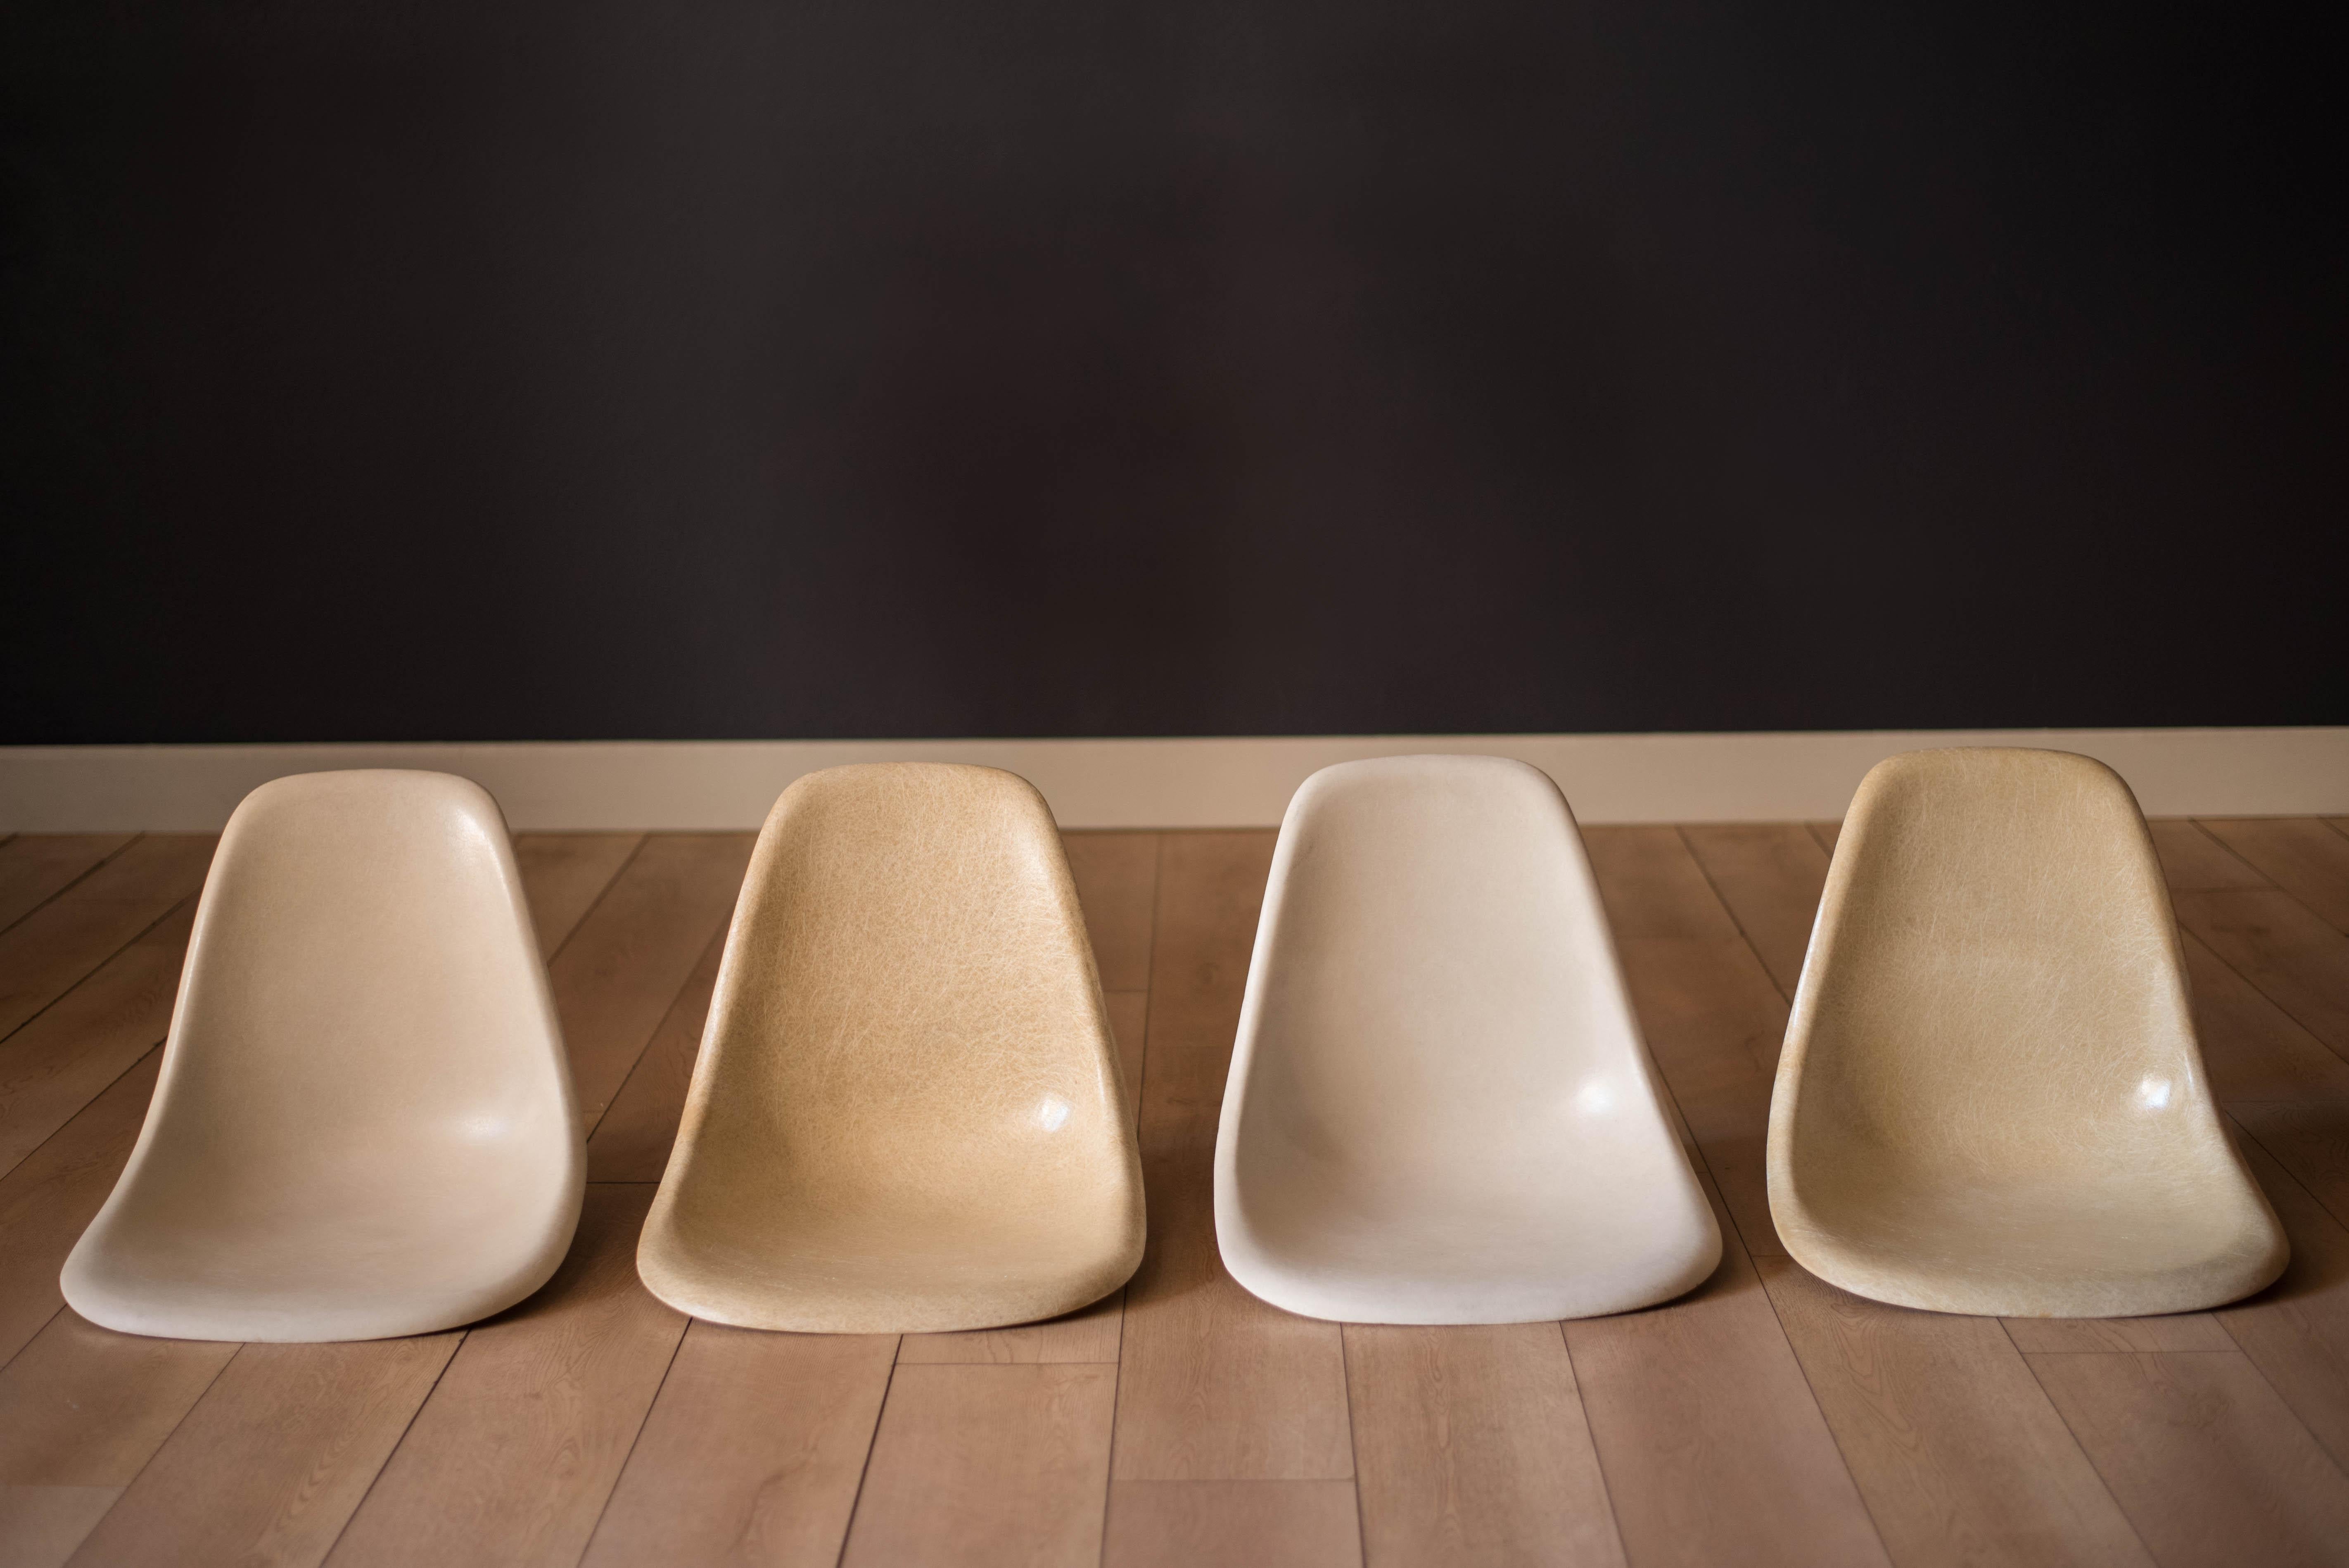 Chaises latérales empilables DSS Mid Century Modern conçues par Ray et Charles Eames pour Herman Miller vers les années 1960. Ces sièges de collection en fibre de verre moulée sont disponibles en gris clair (blanc) et en jaune. Le prix est par